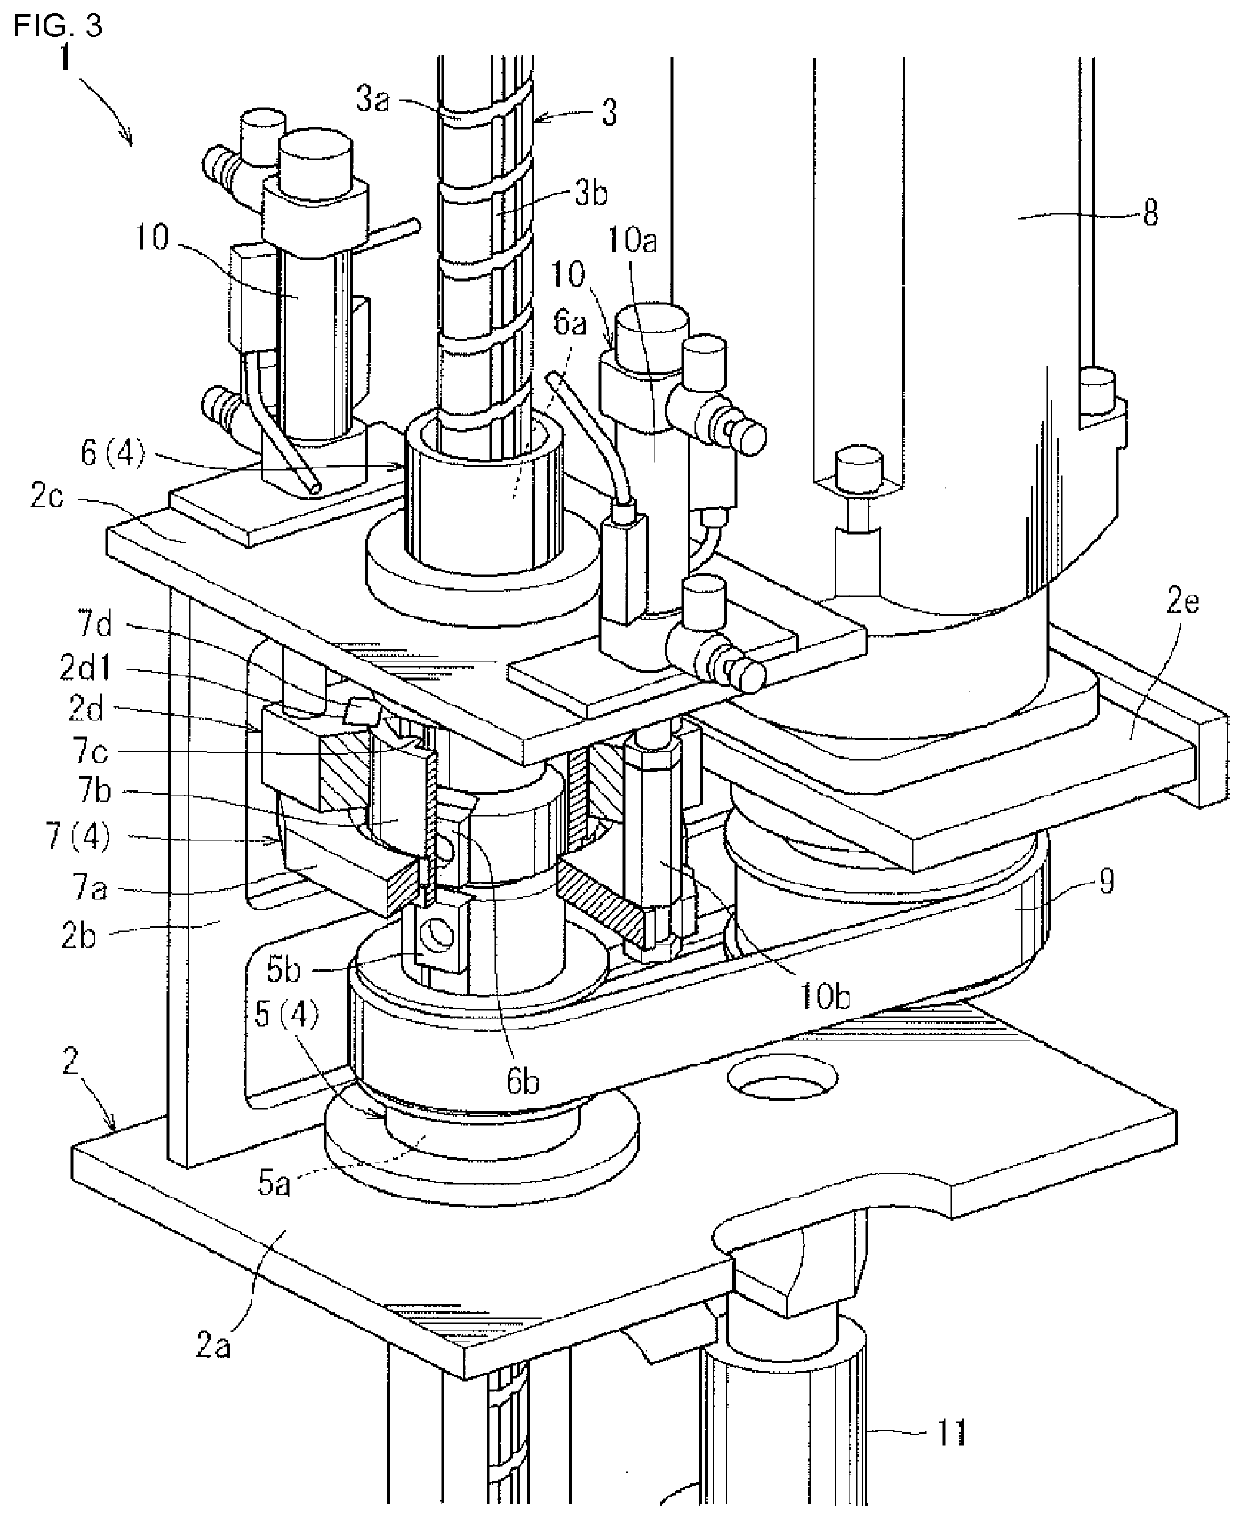 Assembling apparatus